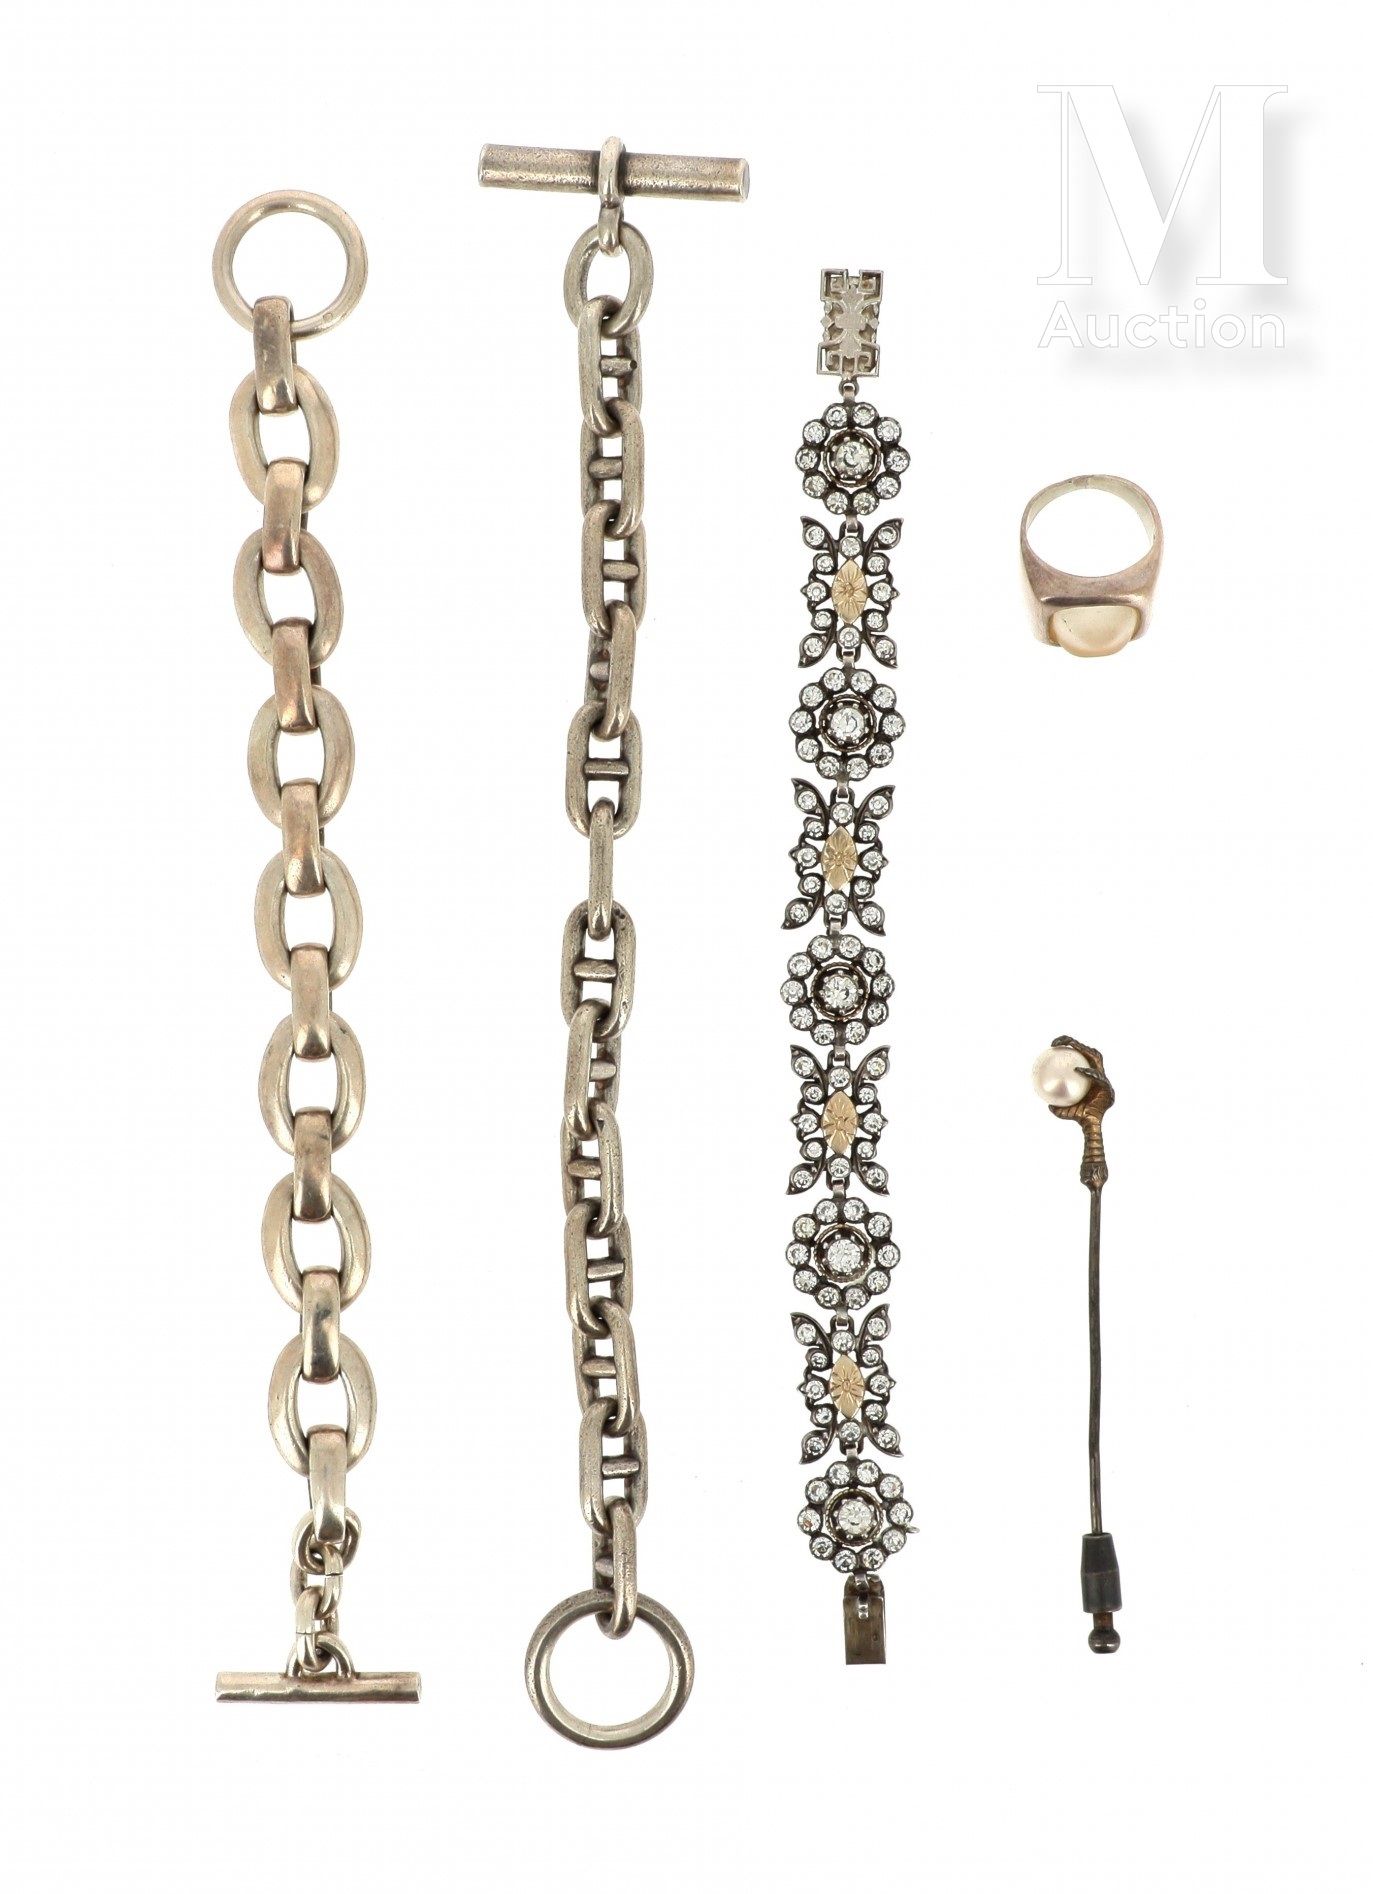 LOT de bijoux Lote de joyas de plata (800°/°° o 950°/°°) compuesto por :

- dos &hellip;